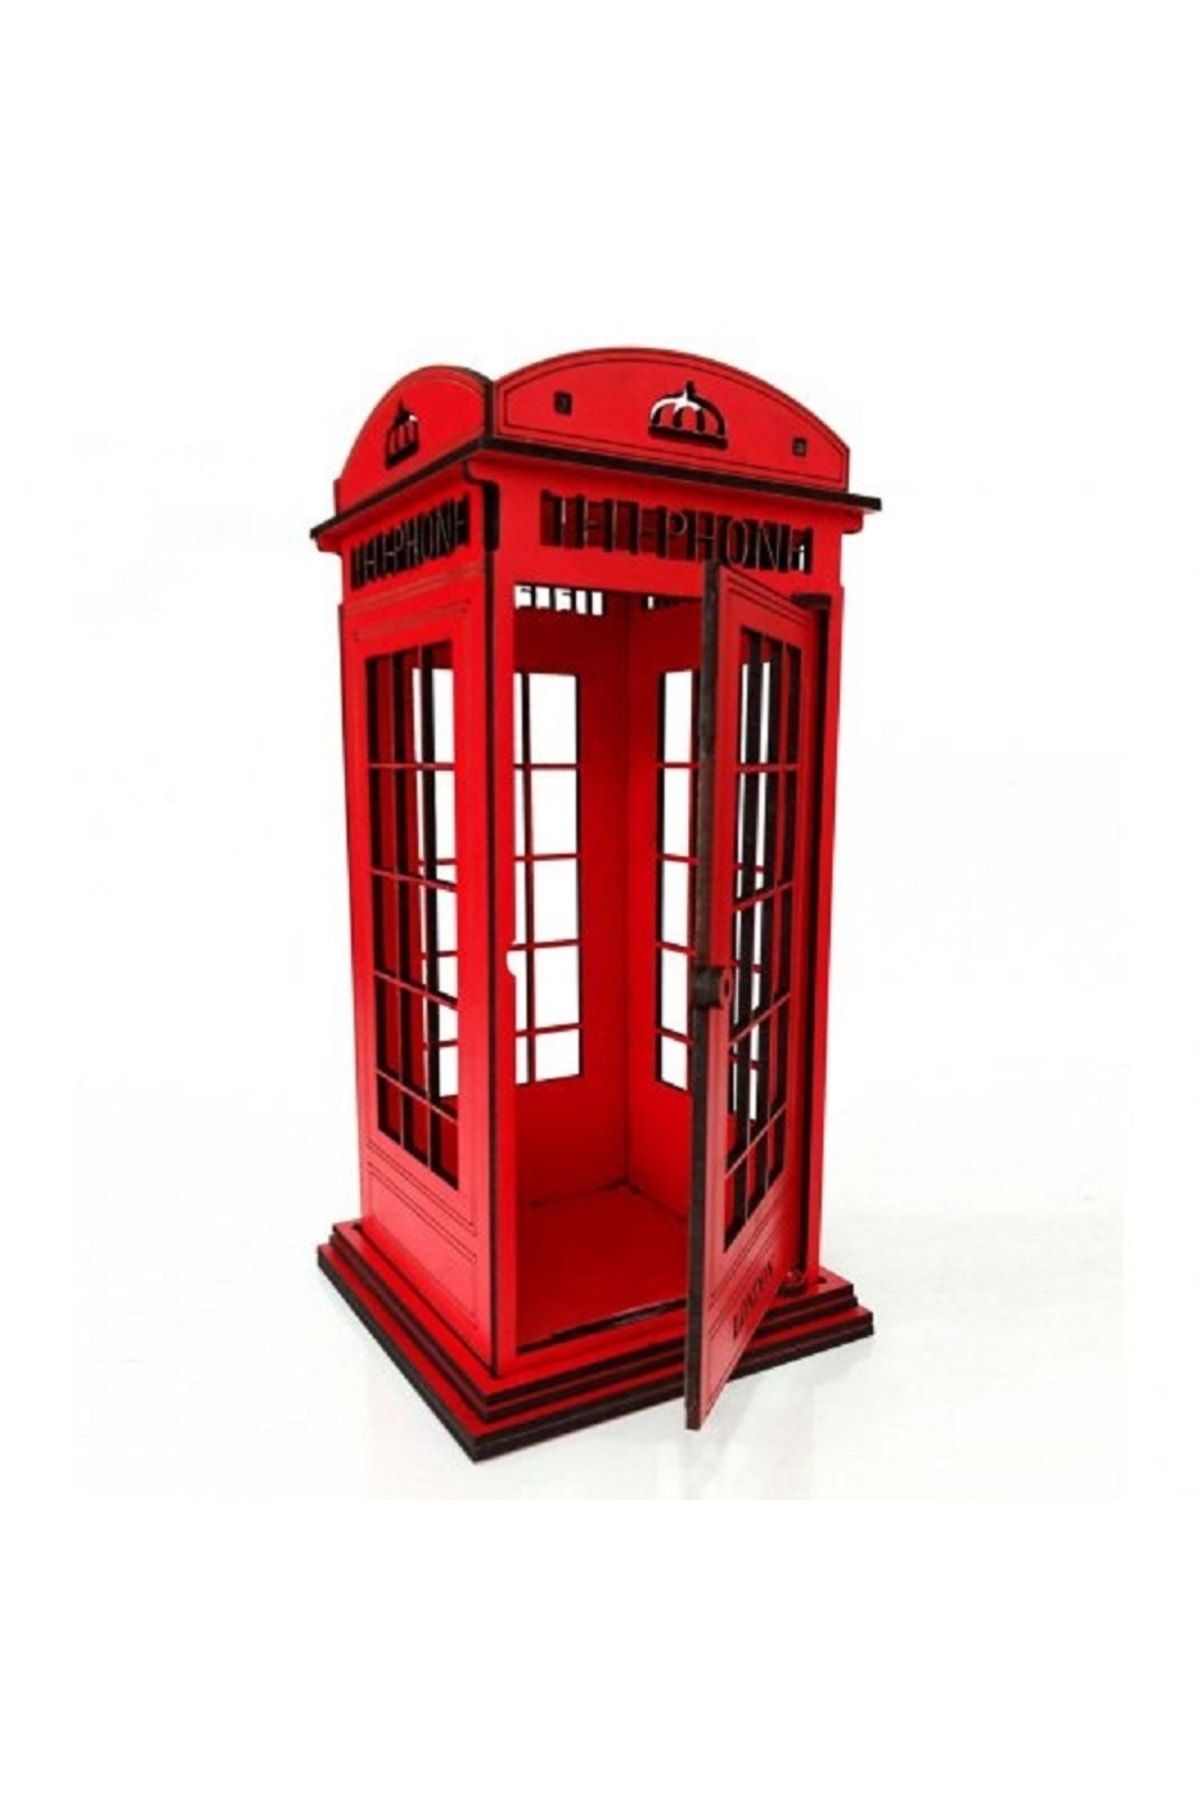 SIFIR312 Ahşap Dekoratif London Telefon Kulübesi - Mumluk, Dekoratif, Süs Londra Kırmızı Telefon Kulübesi